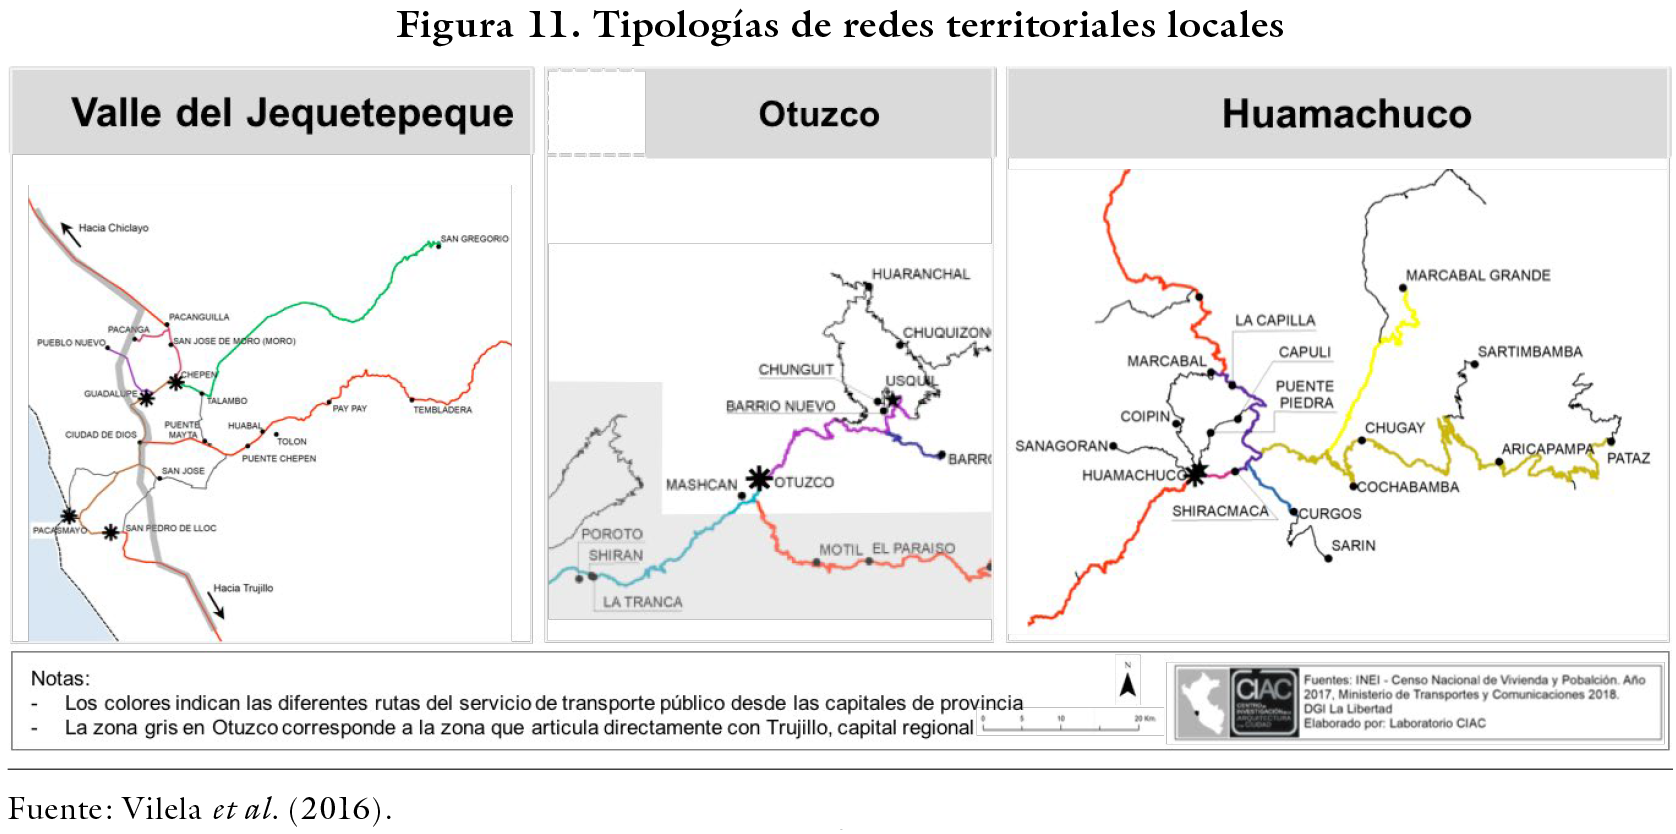 Tipologías de redes territoriales locales